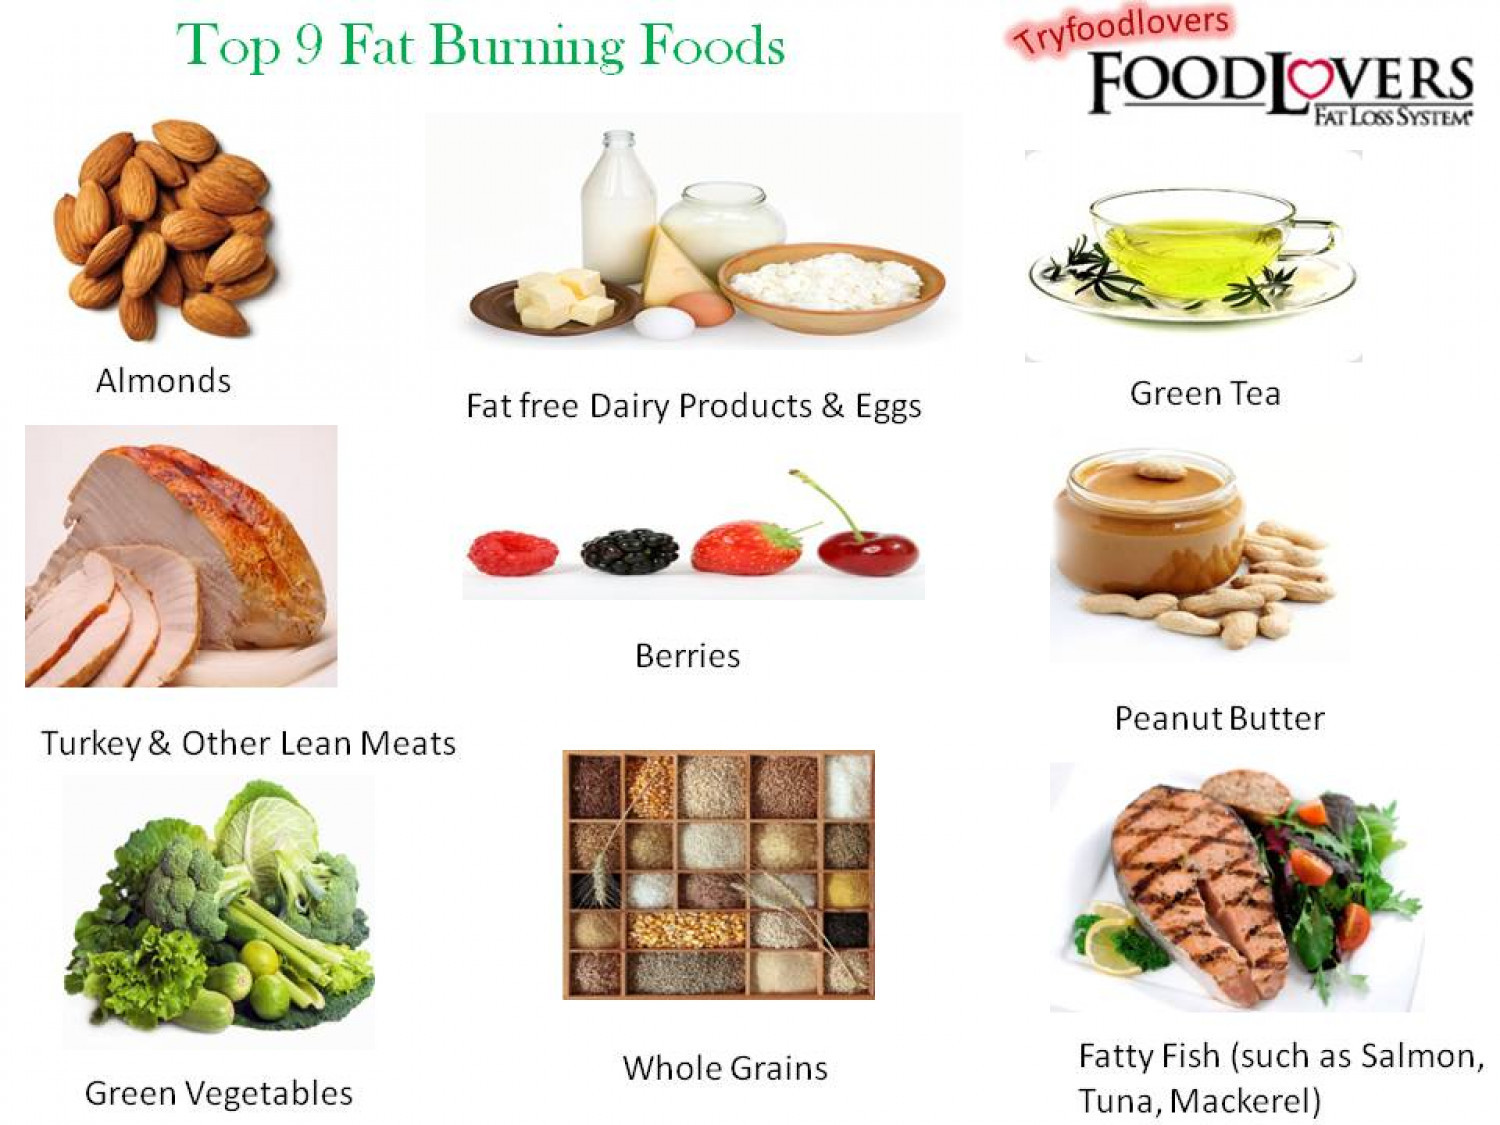 Top Fat Burning Foods
 Top 9 Fat Burning Foods